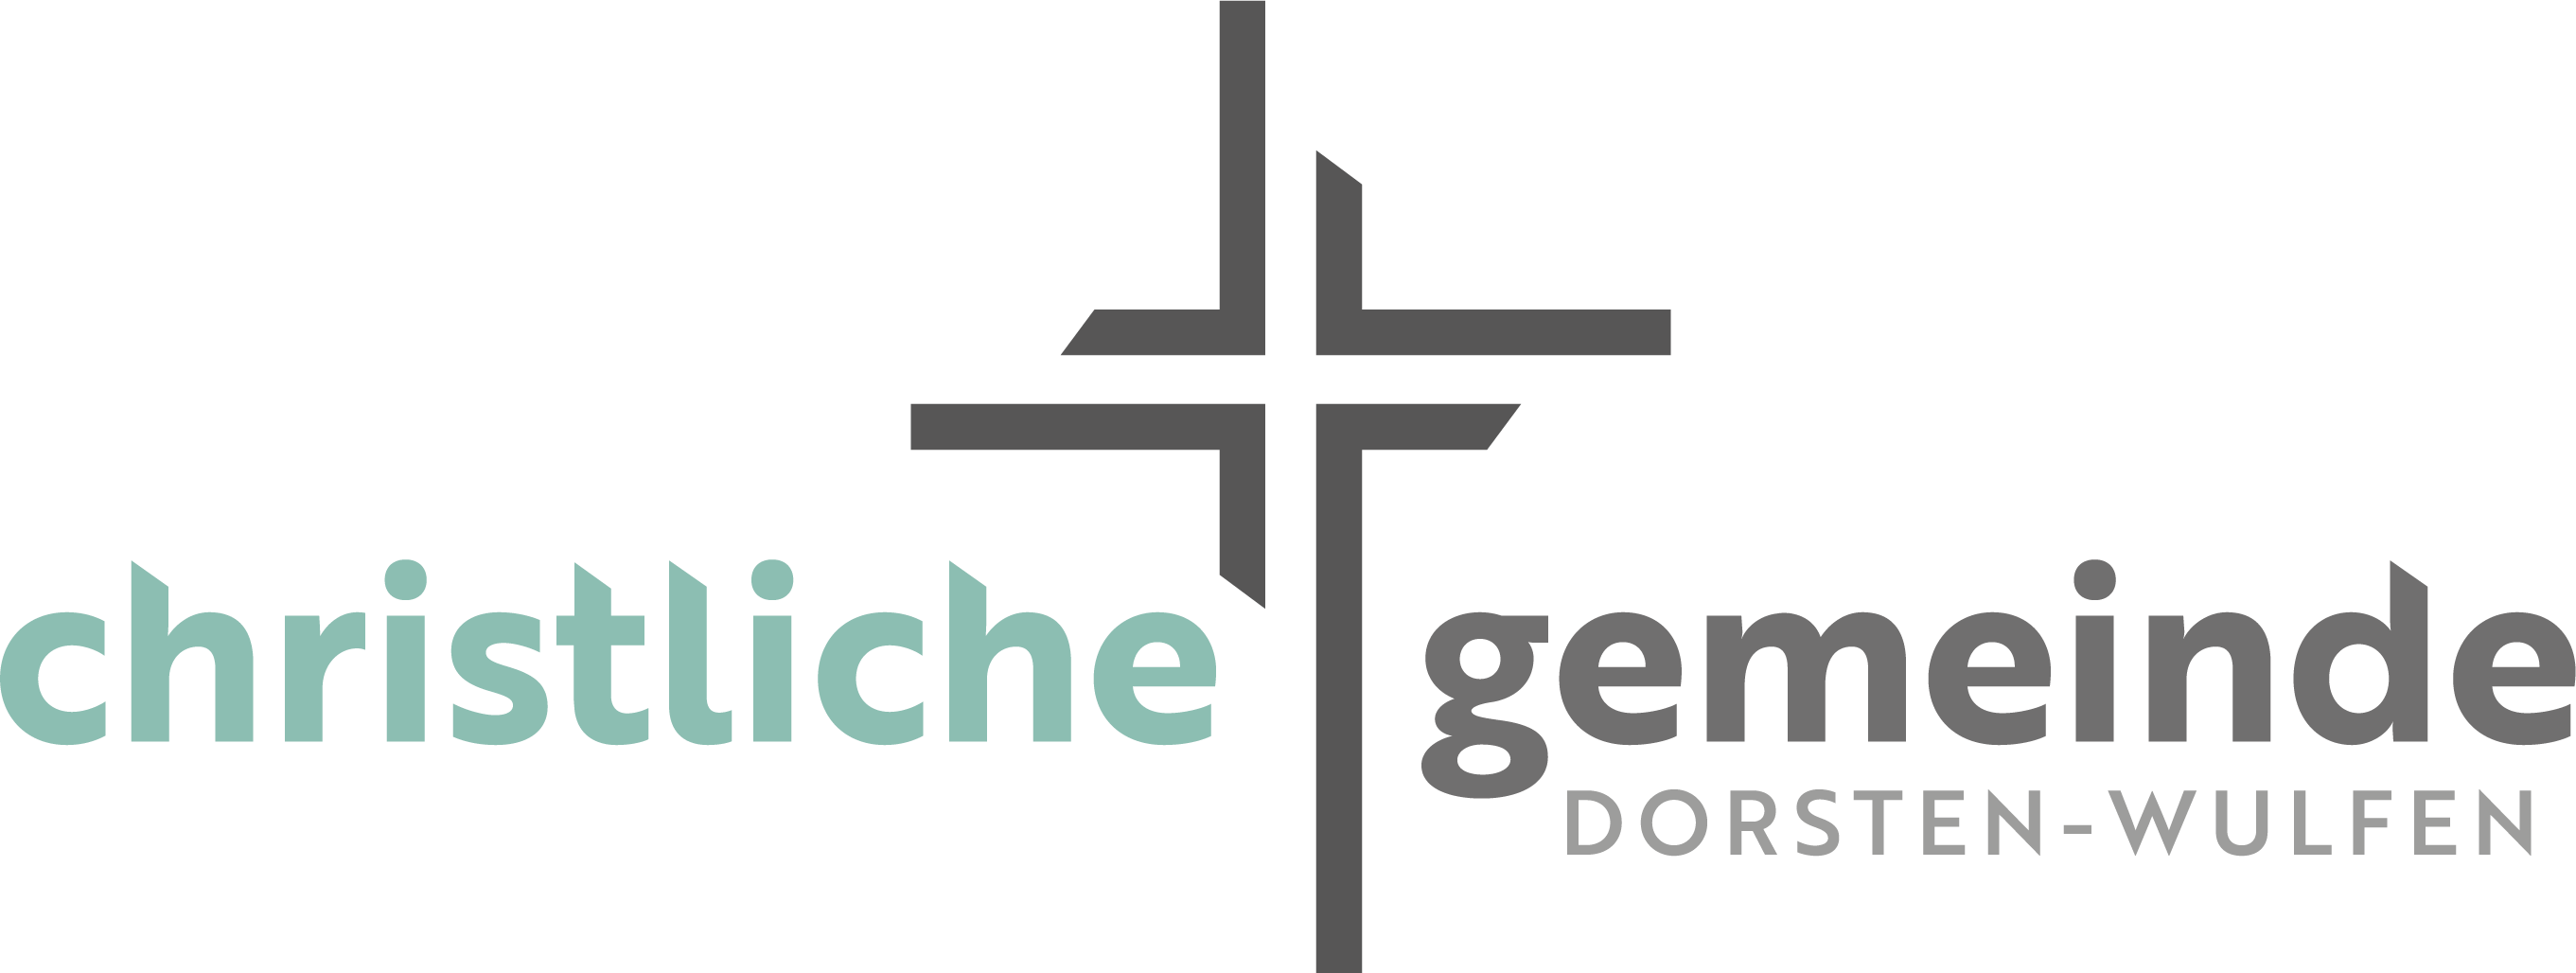 Christliche Gemeinde Dorsten-Wulfen